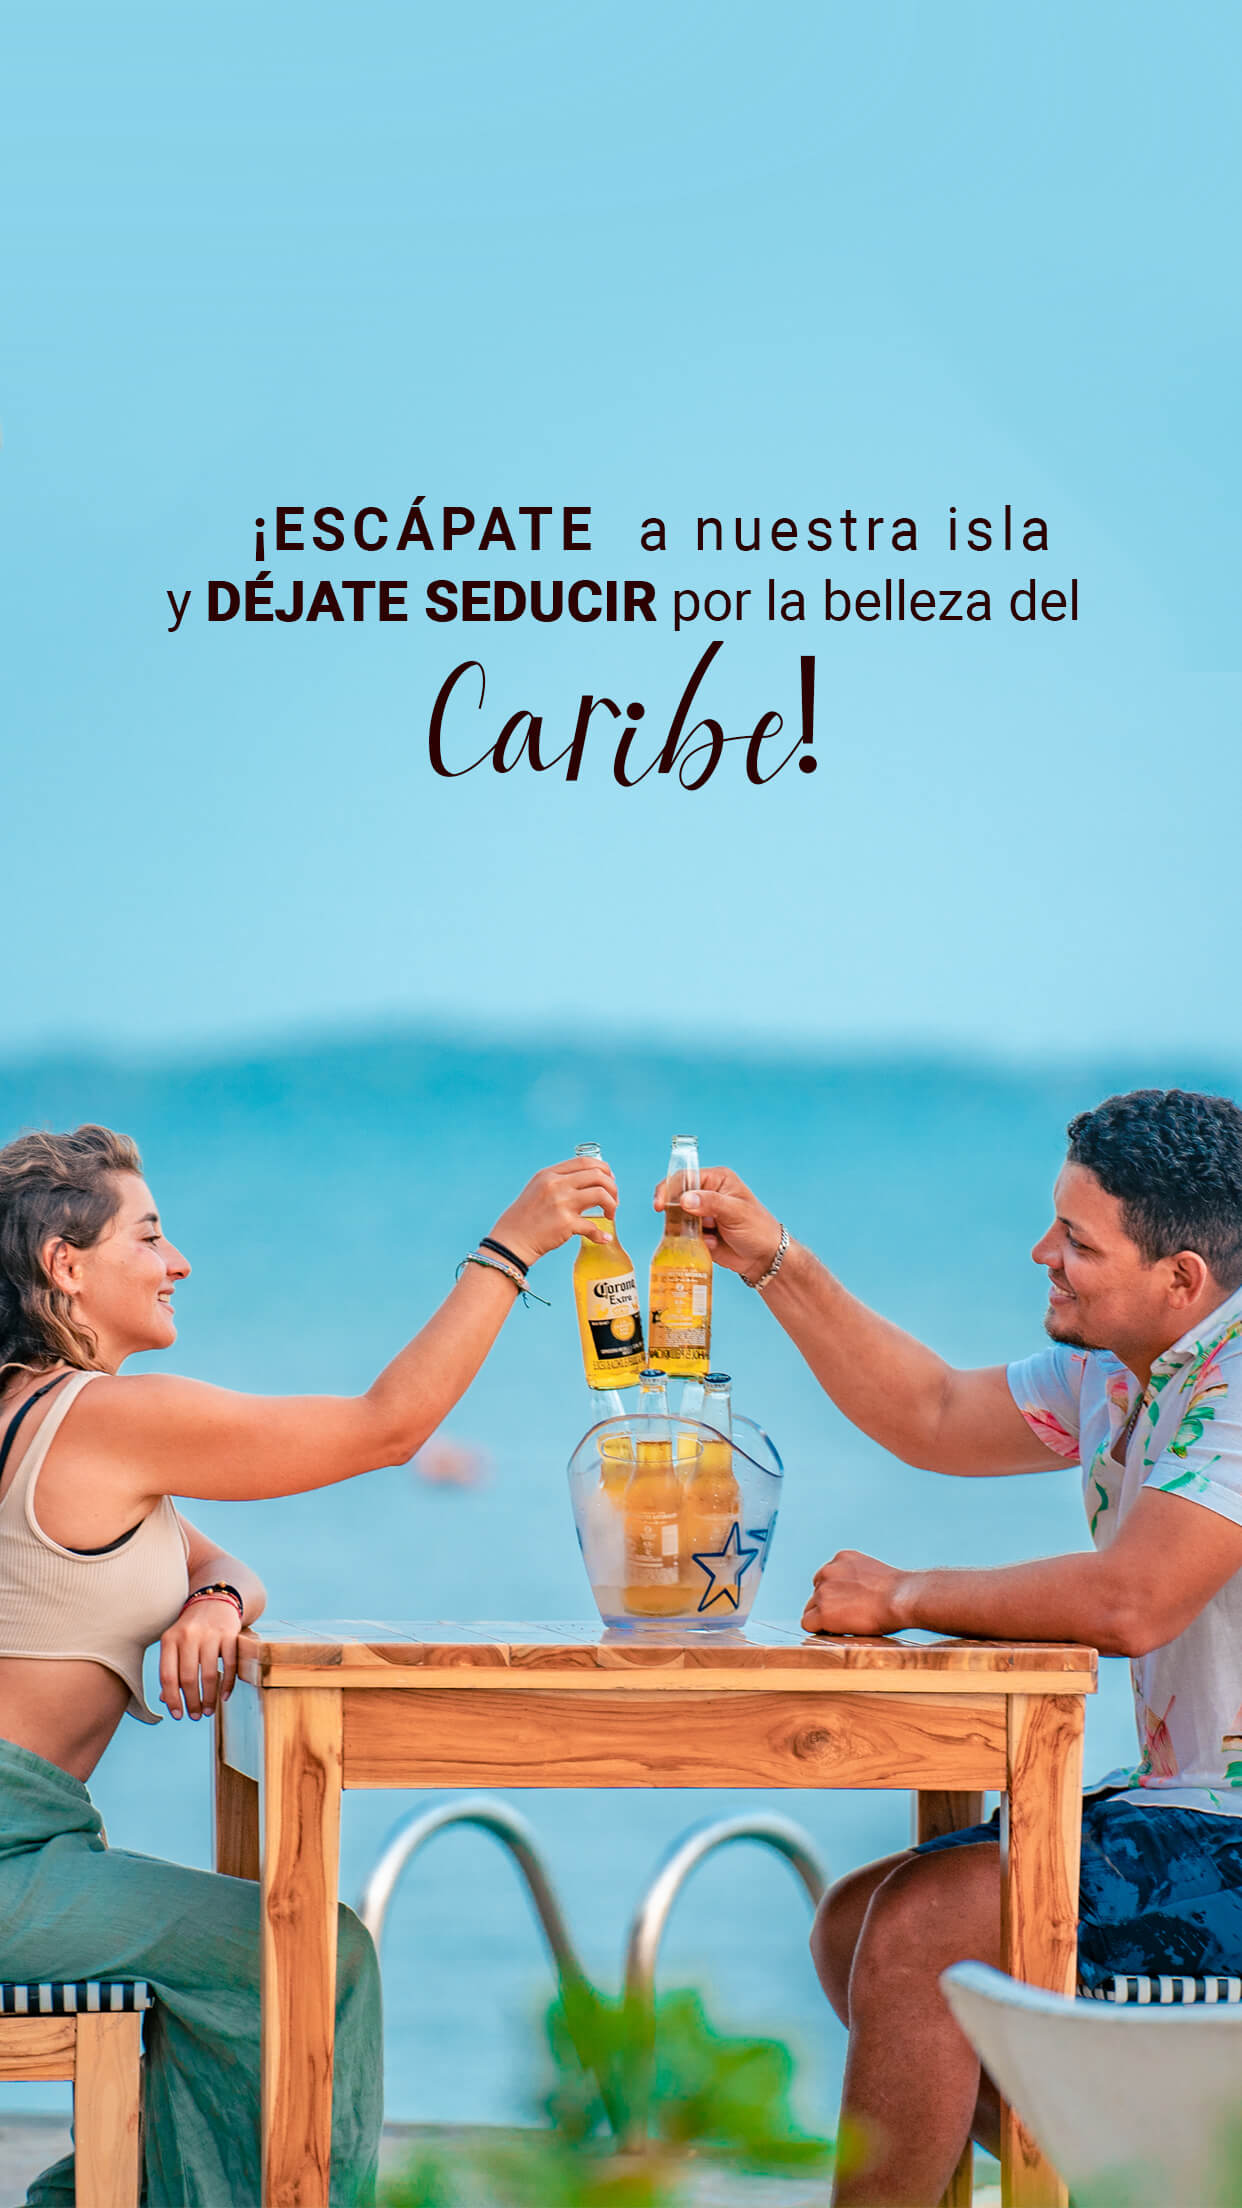 Escapate a nuestra isla y dejate seducir por la belleza del caribe colombiano